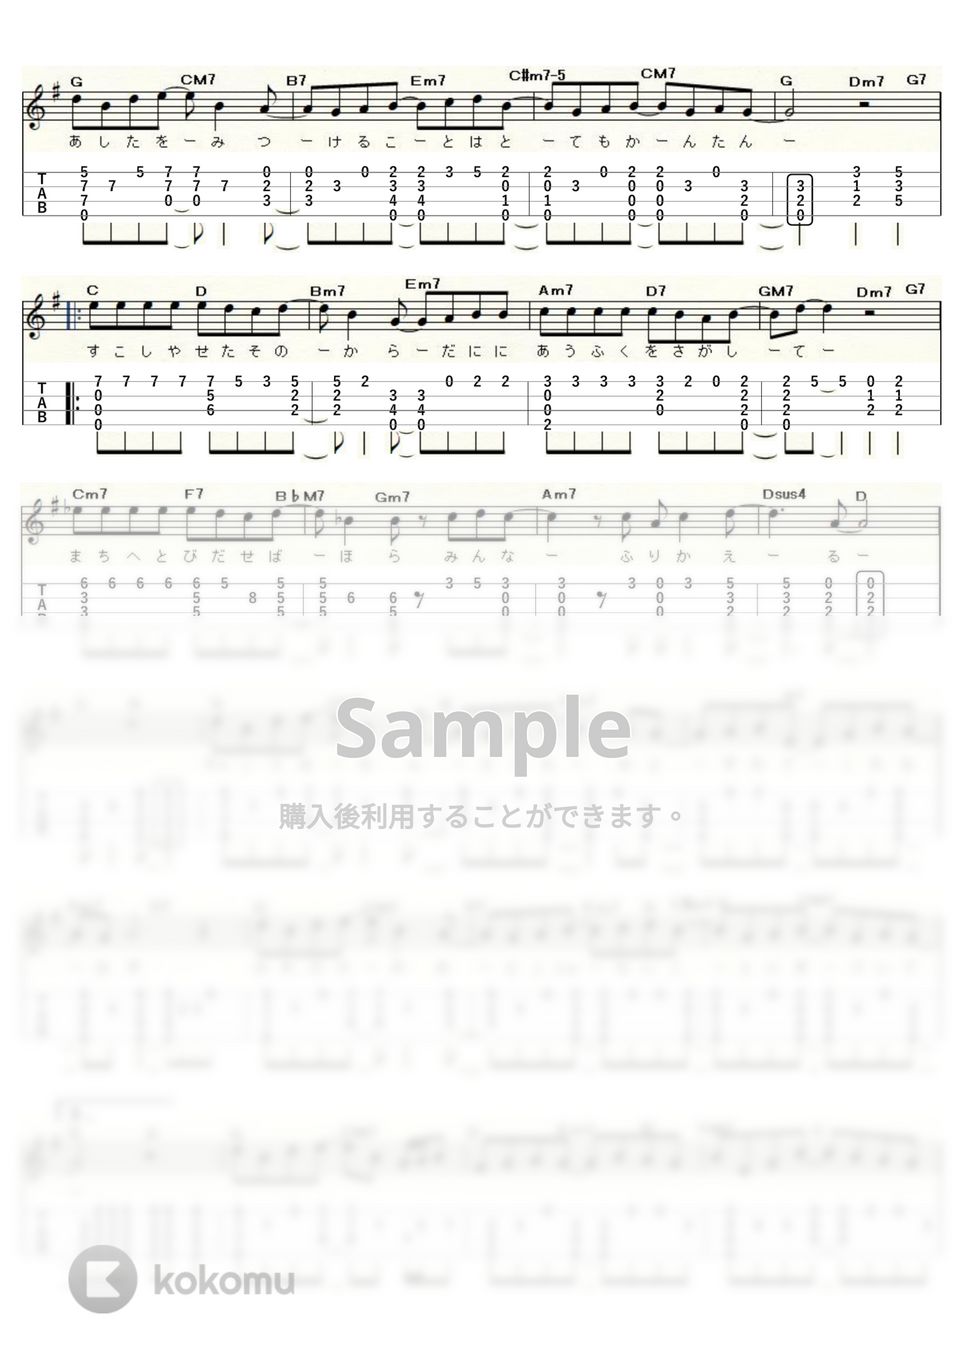 竹内まりや - 元気を出して (ｳｸﾚﾚｿﾛ / High-G・Low-G / 中級) by ukulelepapa